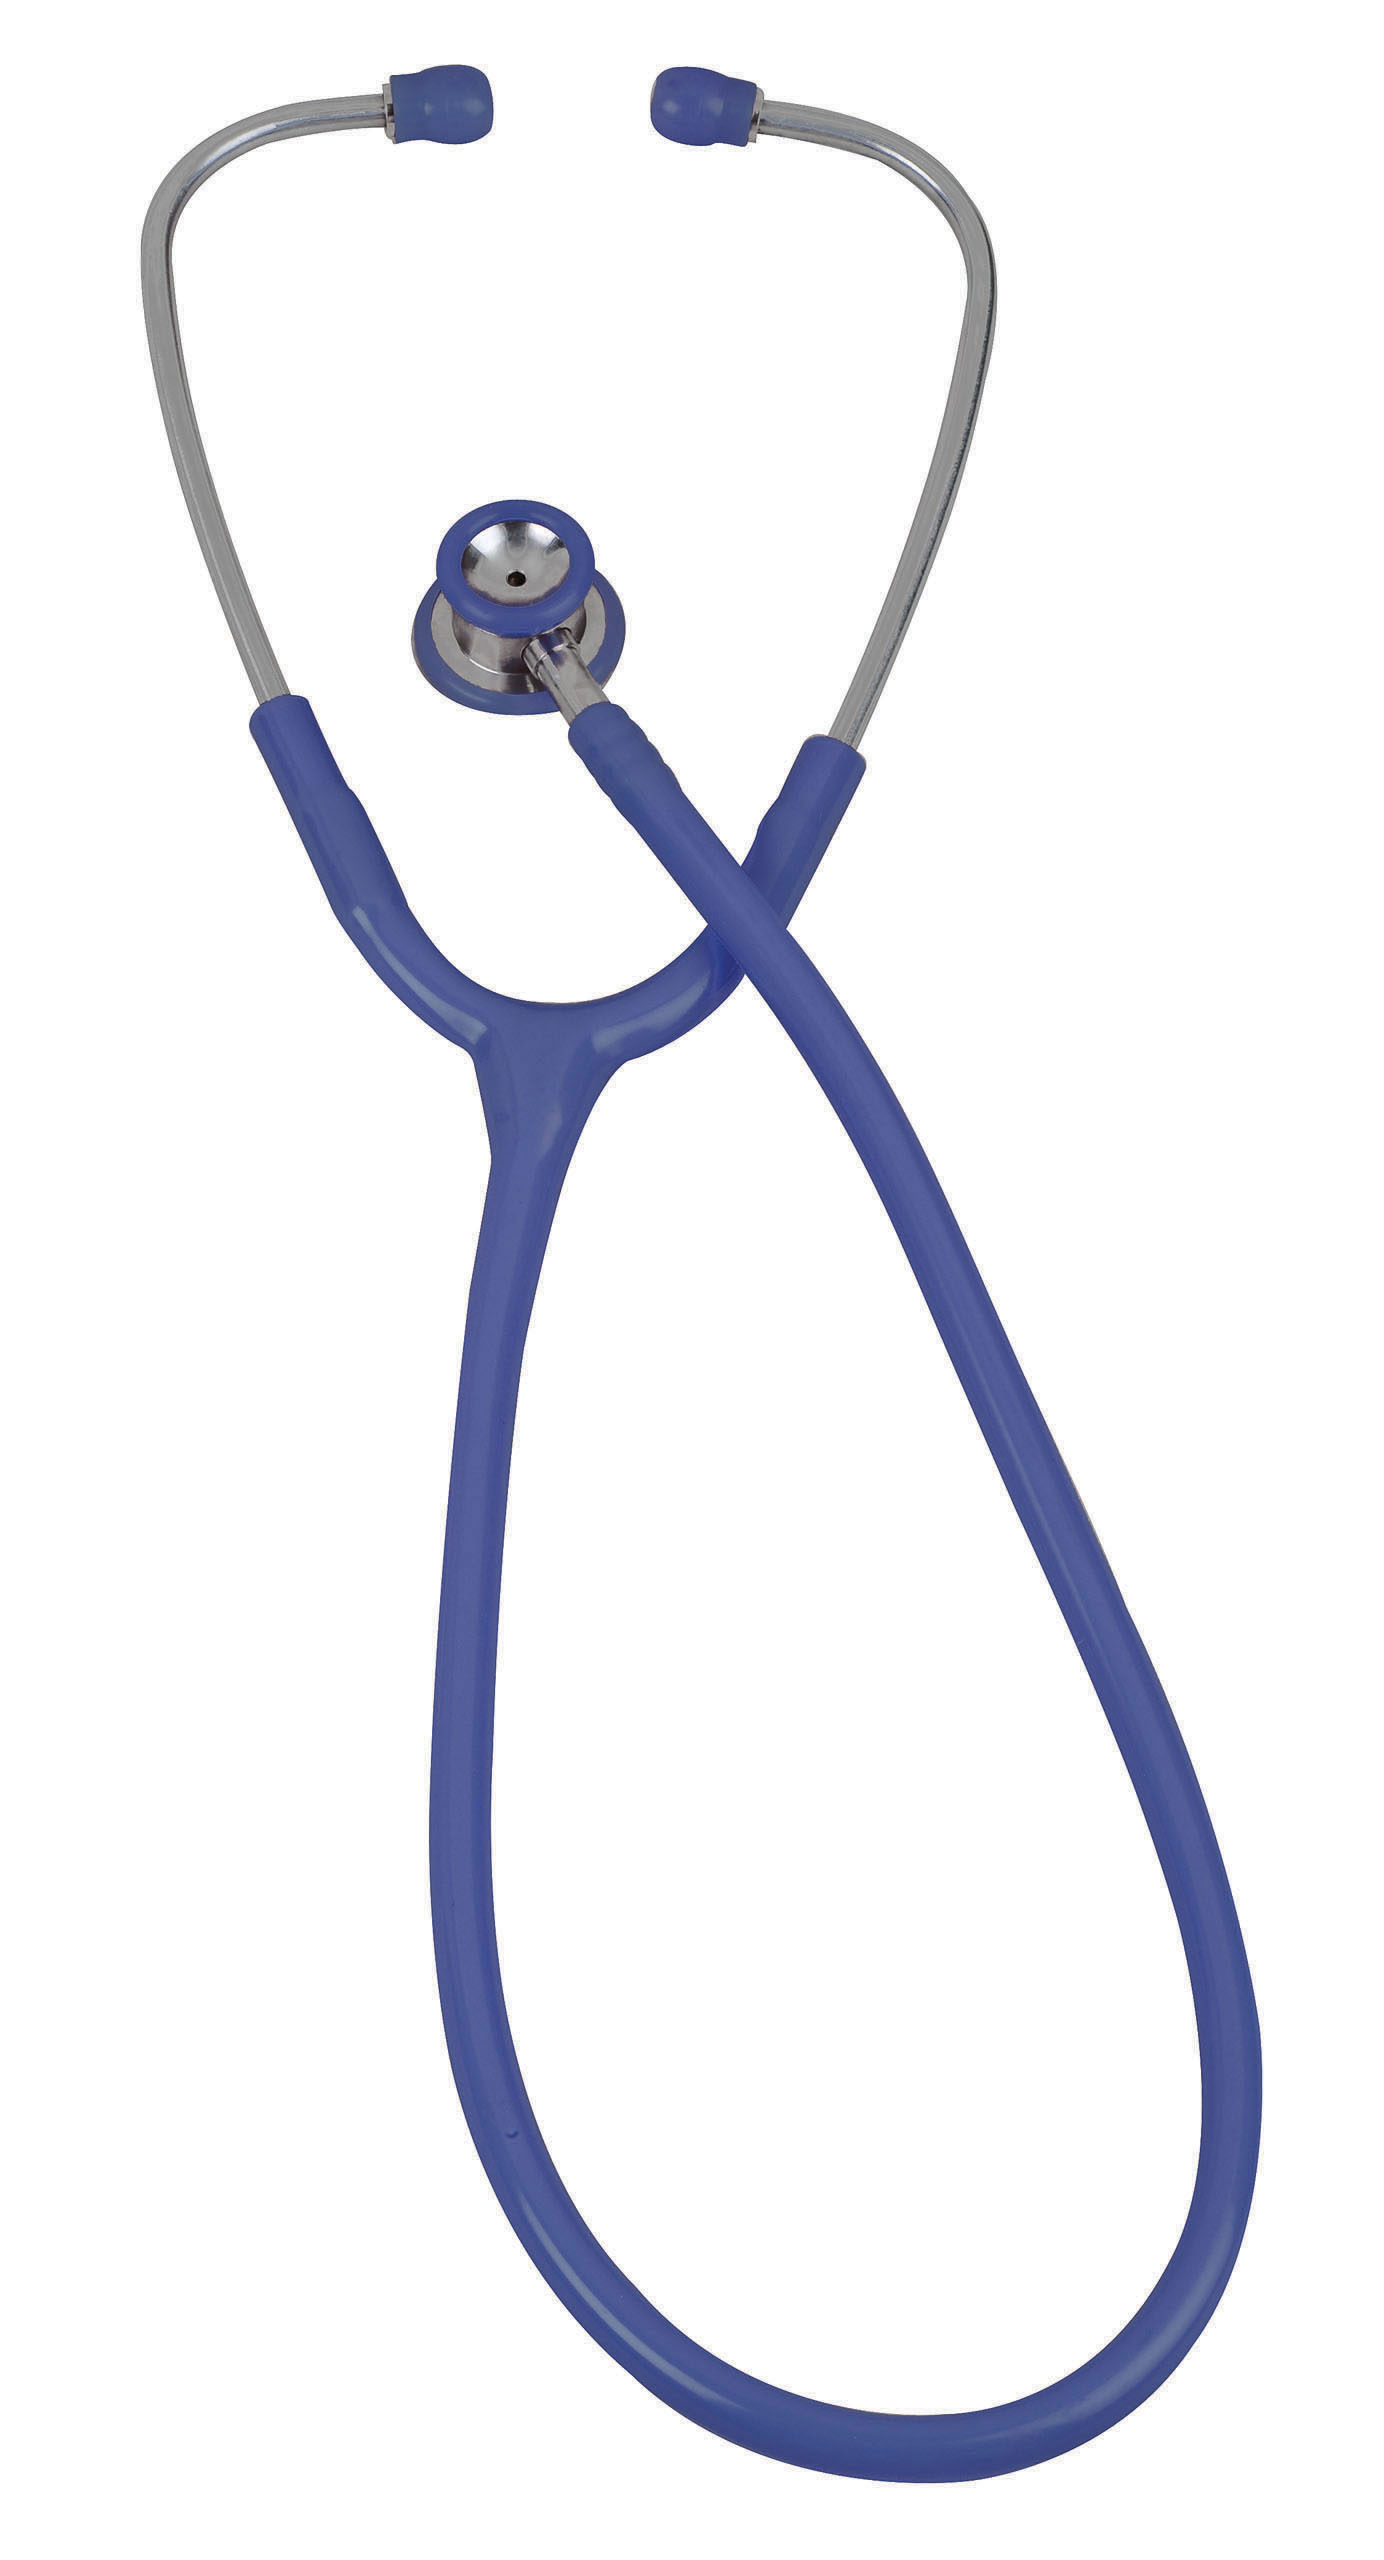 pinnacle-series-stainless-steel-infant-stethoscope-royal-blue-05-10703-veridian-2.jpg